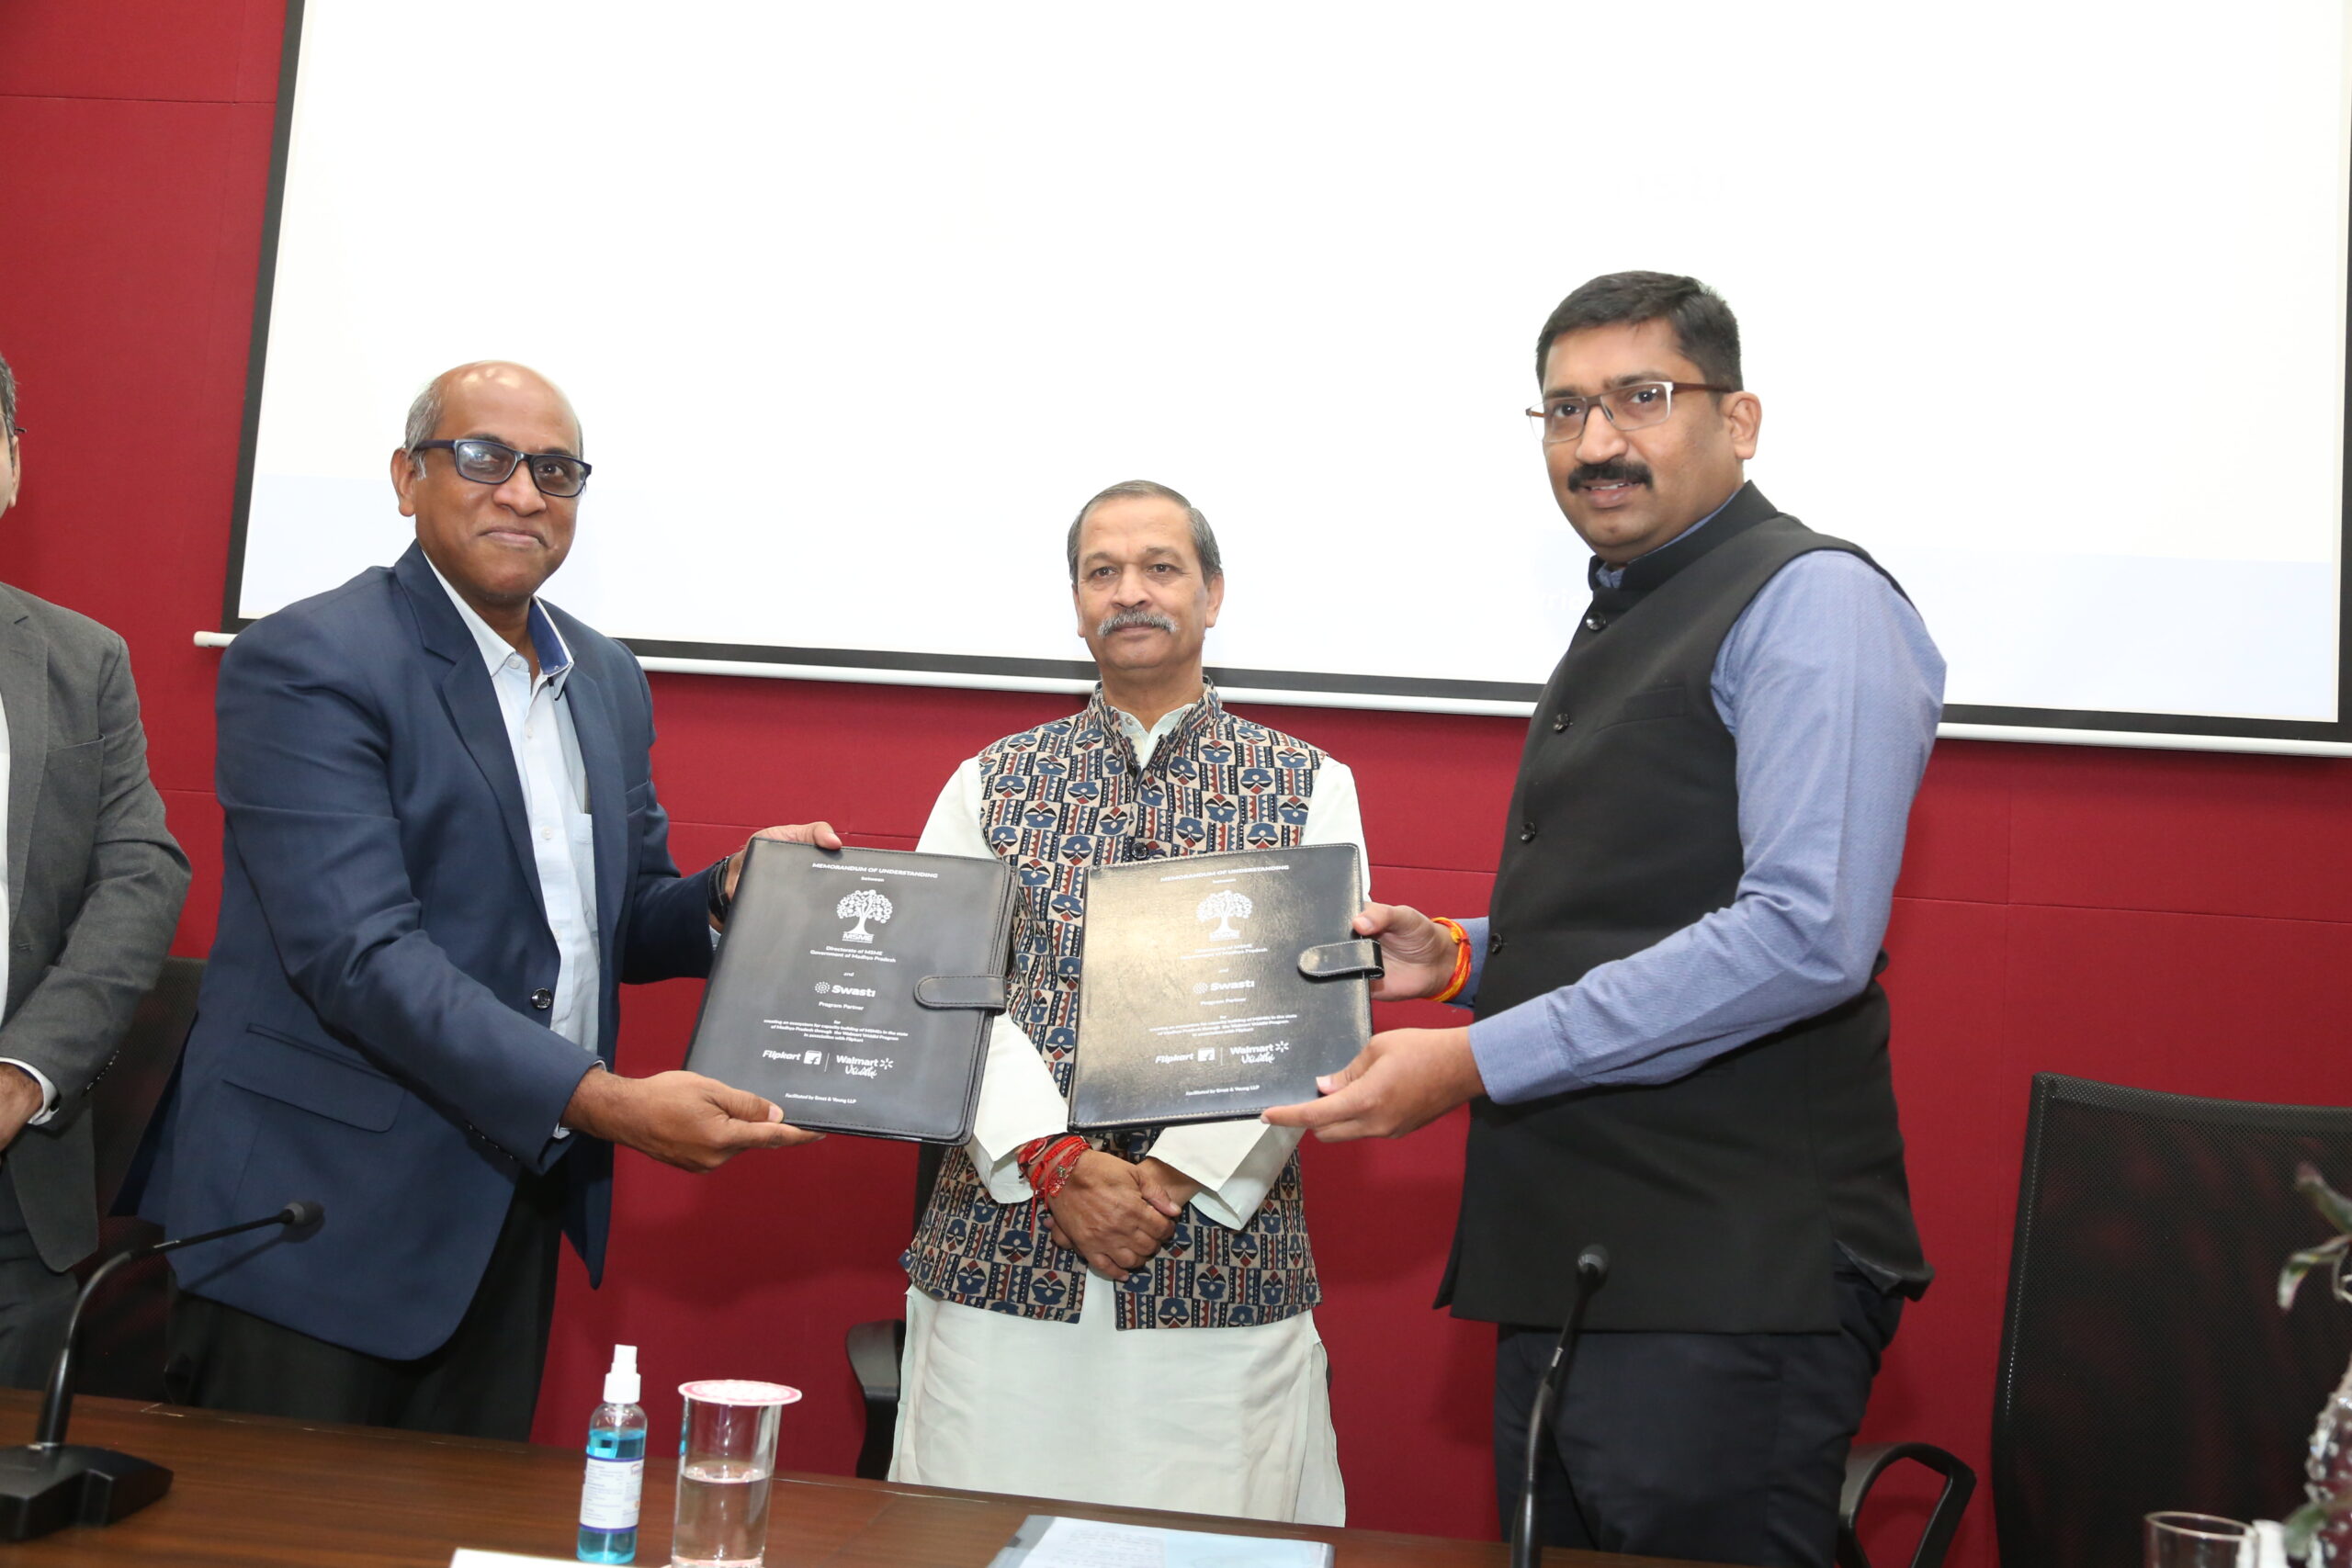 वॉलमार्ट और फ्लिपकार्ट ने स्थानीय एमएसएमई को प्रशिक्षण और सहयोग देने के लिए मध्य प्रदेश सरकार के साथ समझौता ज्ञापन पर किए हस्ताक्षर